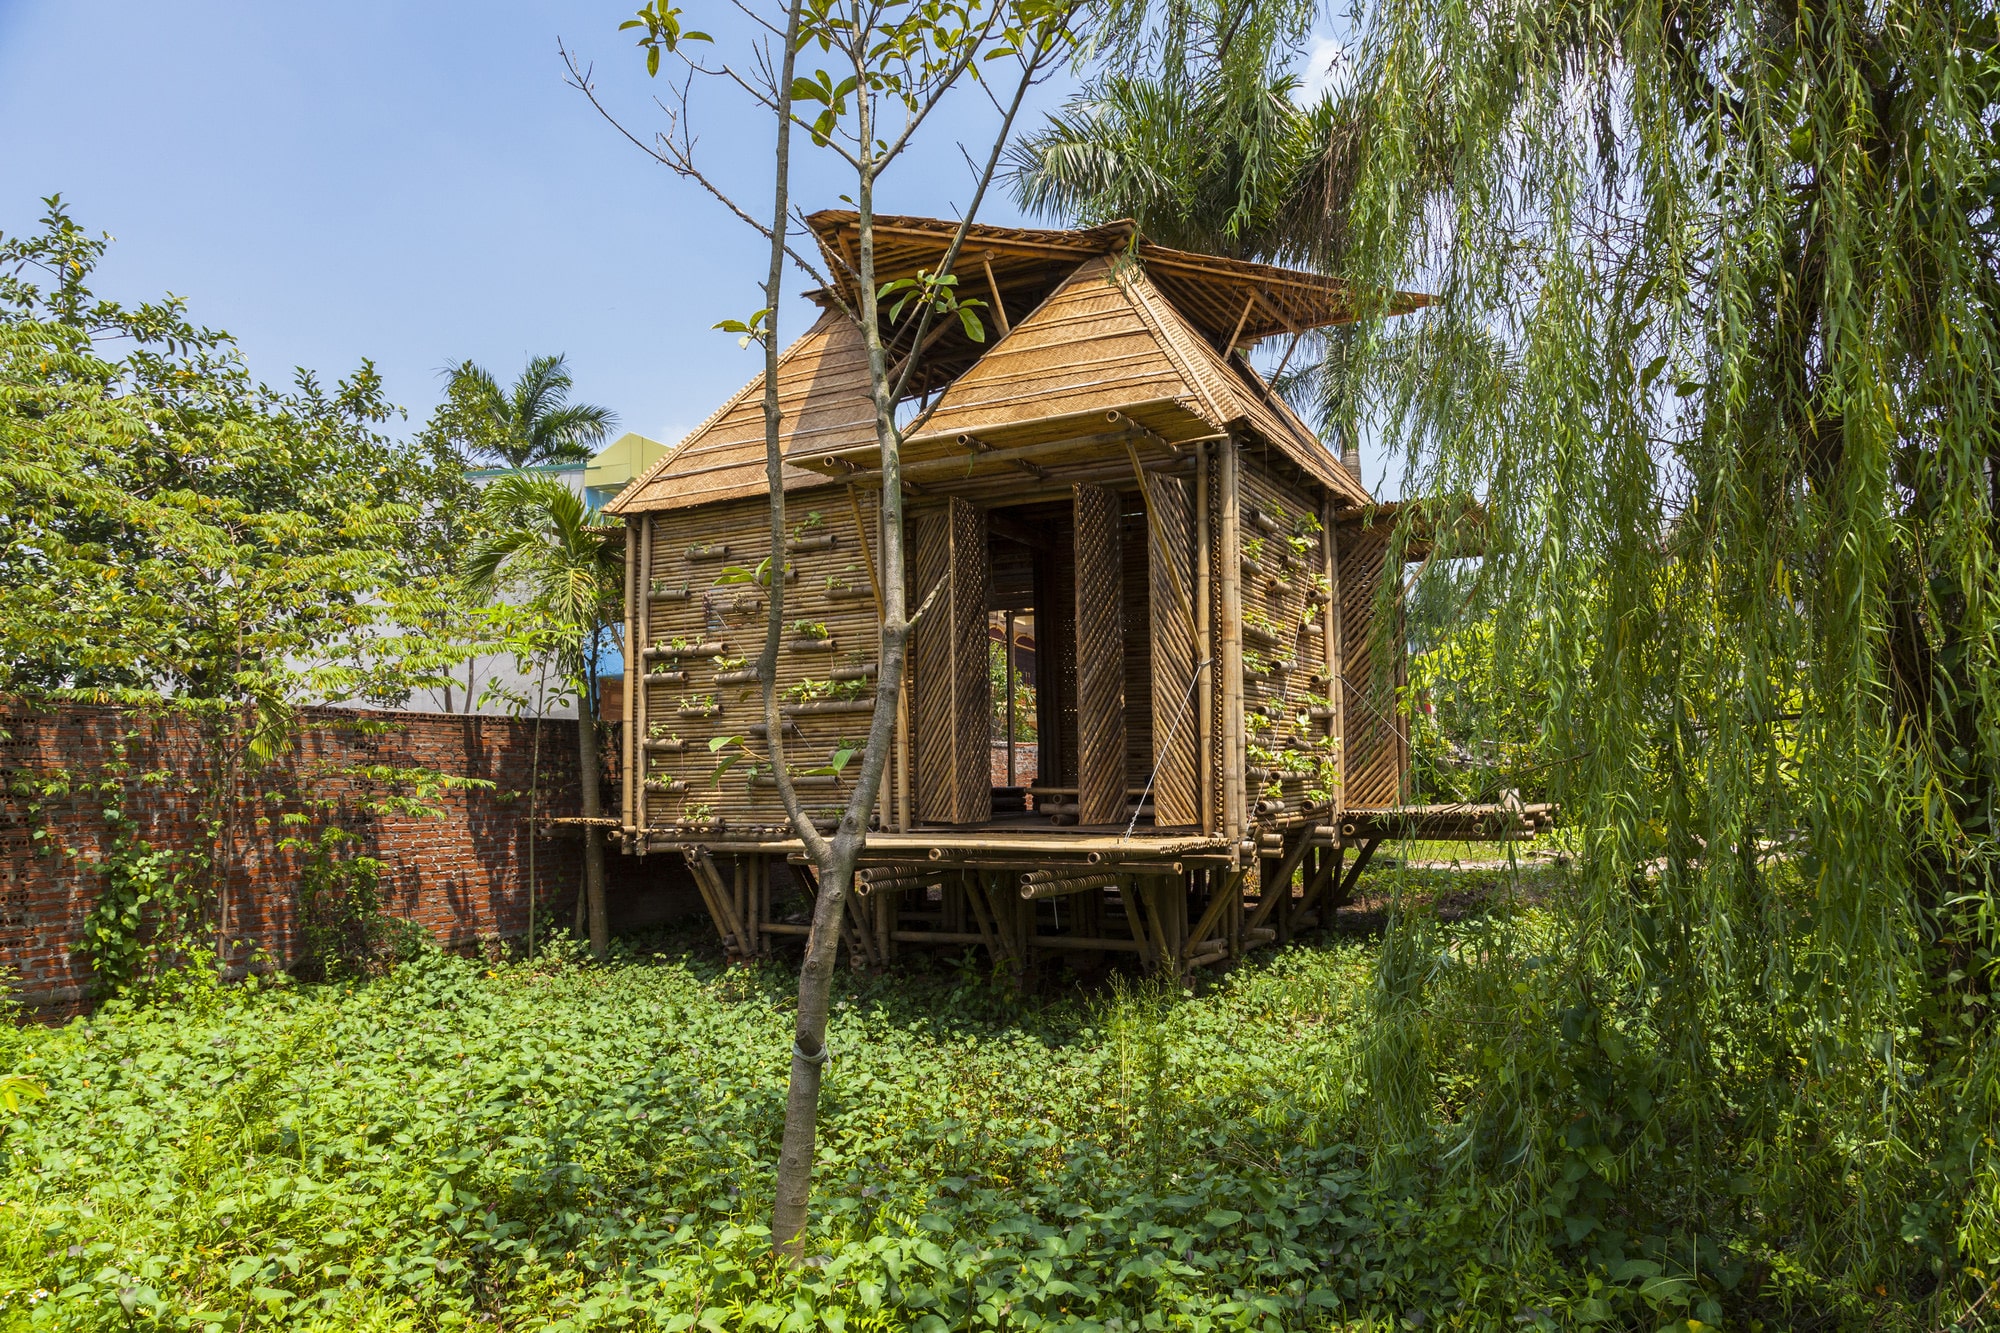  Rumah Bambu  di Pekarangan Thegorbalsla